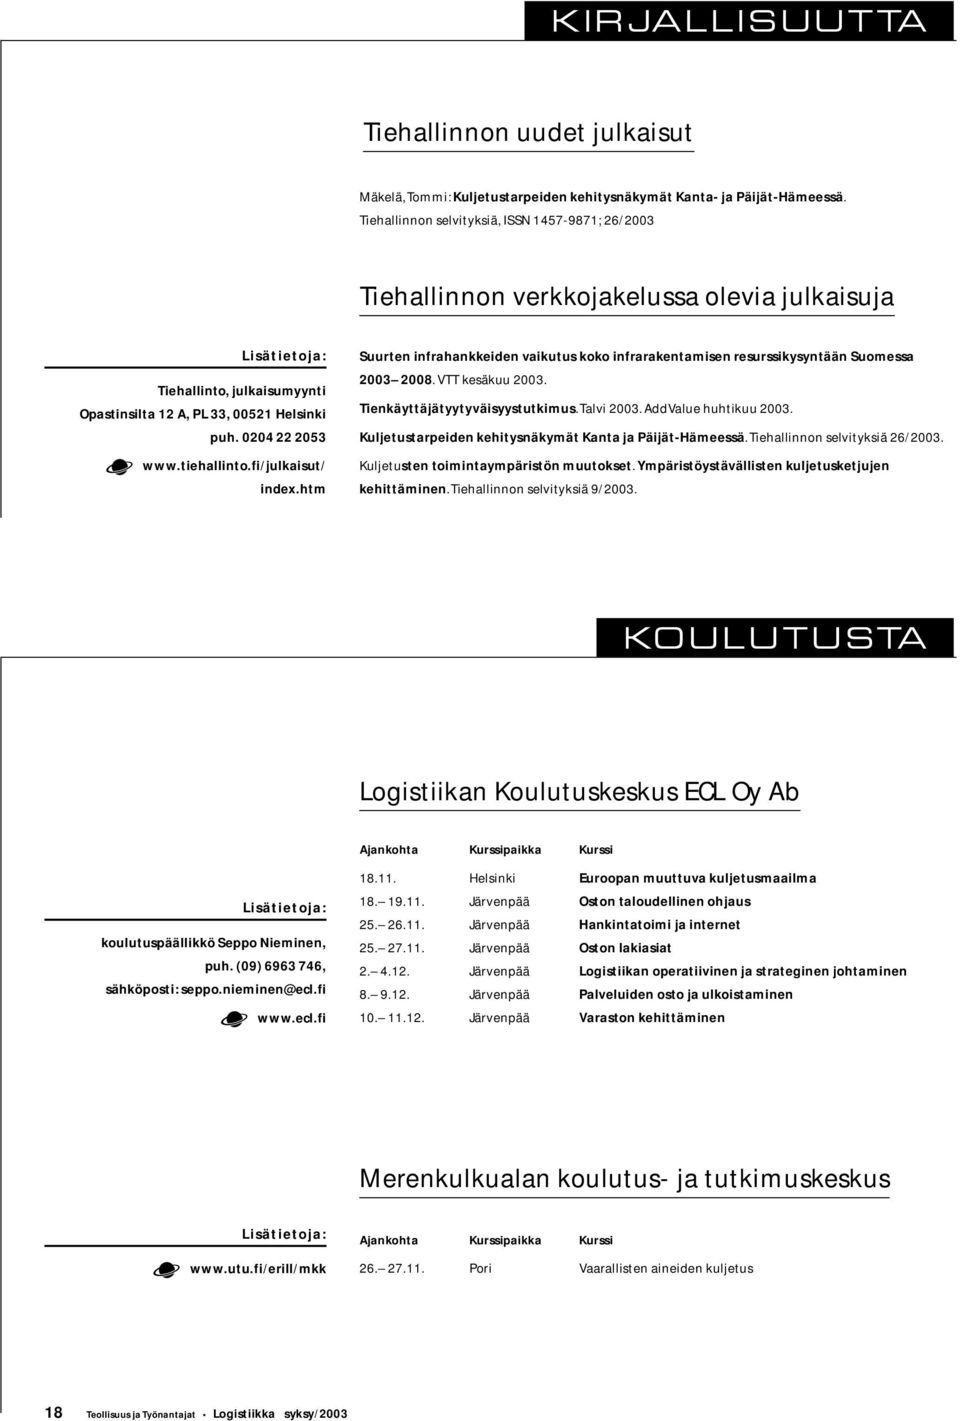 f/julkasut/ ndex.htm Suurten nfrahankkeden vakutus koko nfrarakentamsen resursskysyntään Suomessa 2003 2008. VTT kesäkuu 2003. Tenkäyttäjätyytyväsyystutkmus. Talv 2003. AddValue huhtkuu 2003.